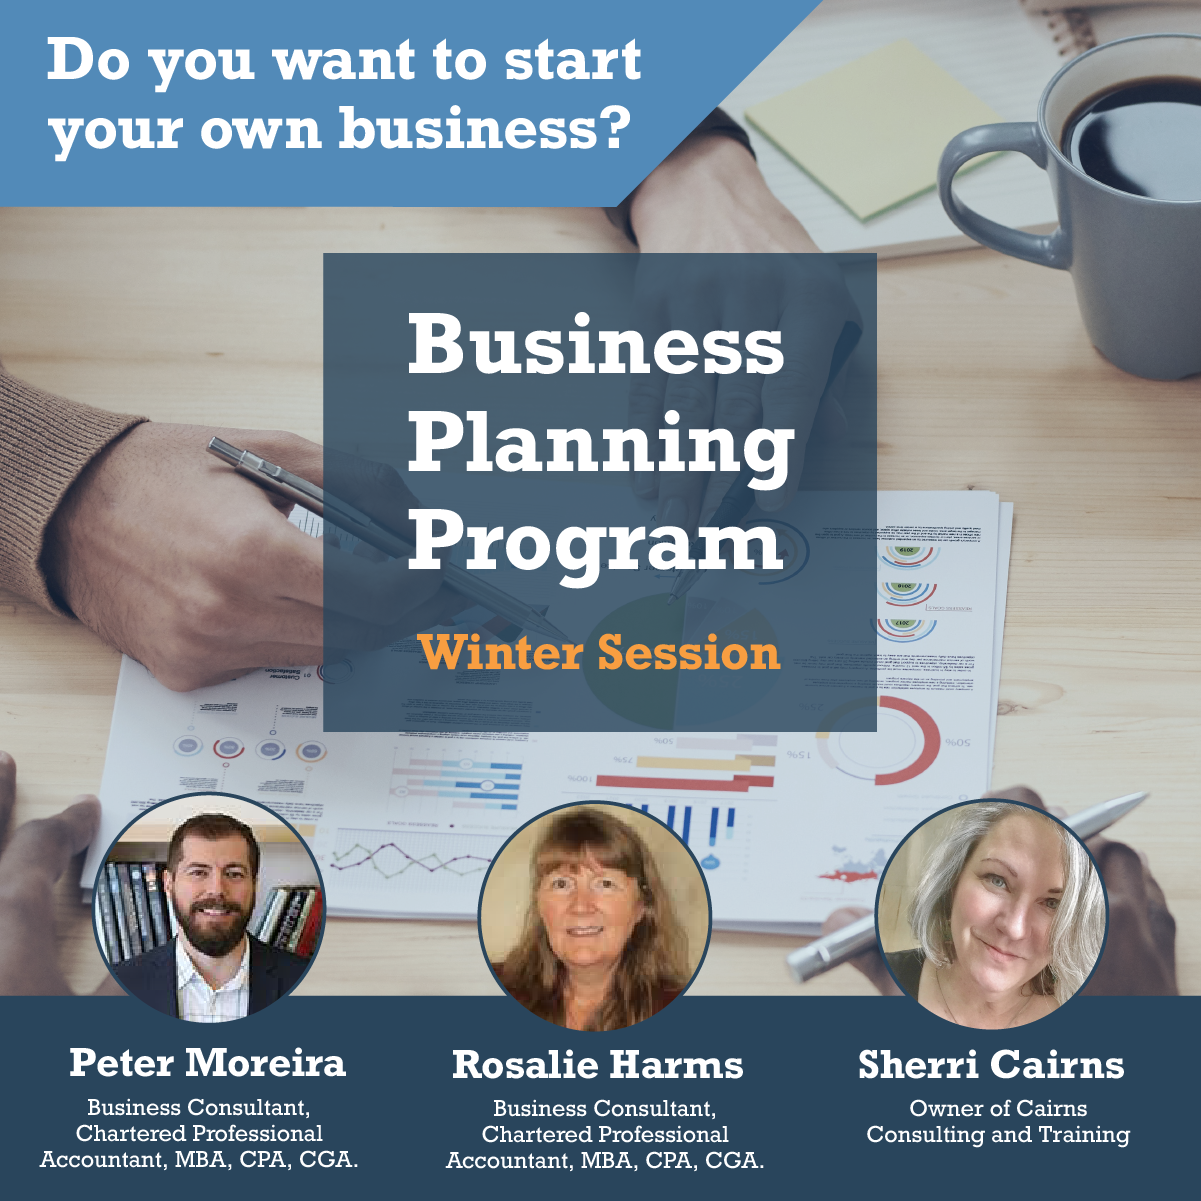 Business Planning Program, Entrepreneurship, small business, business training